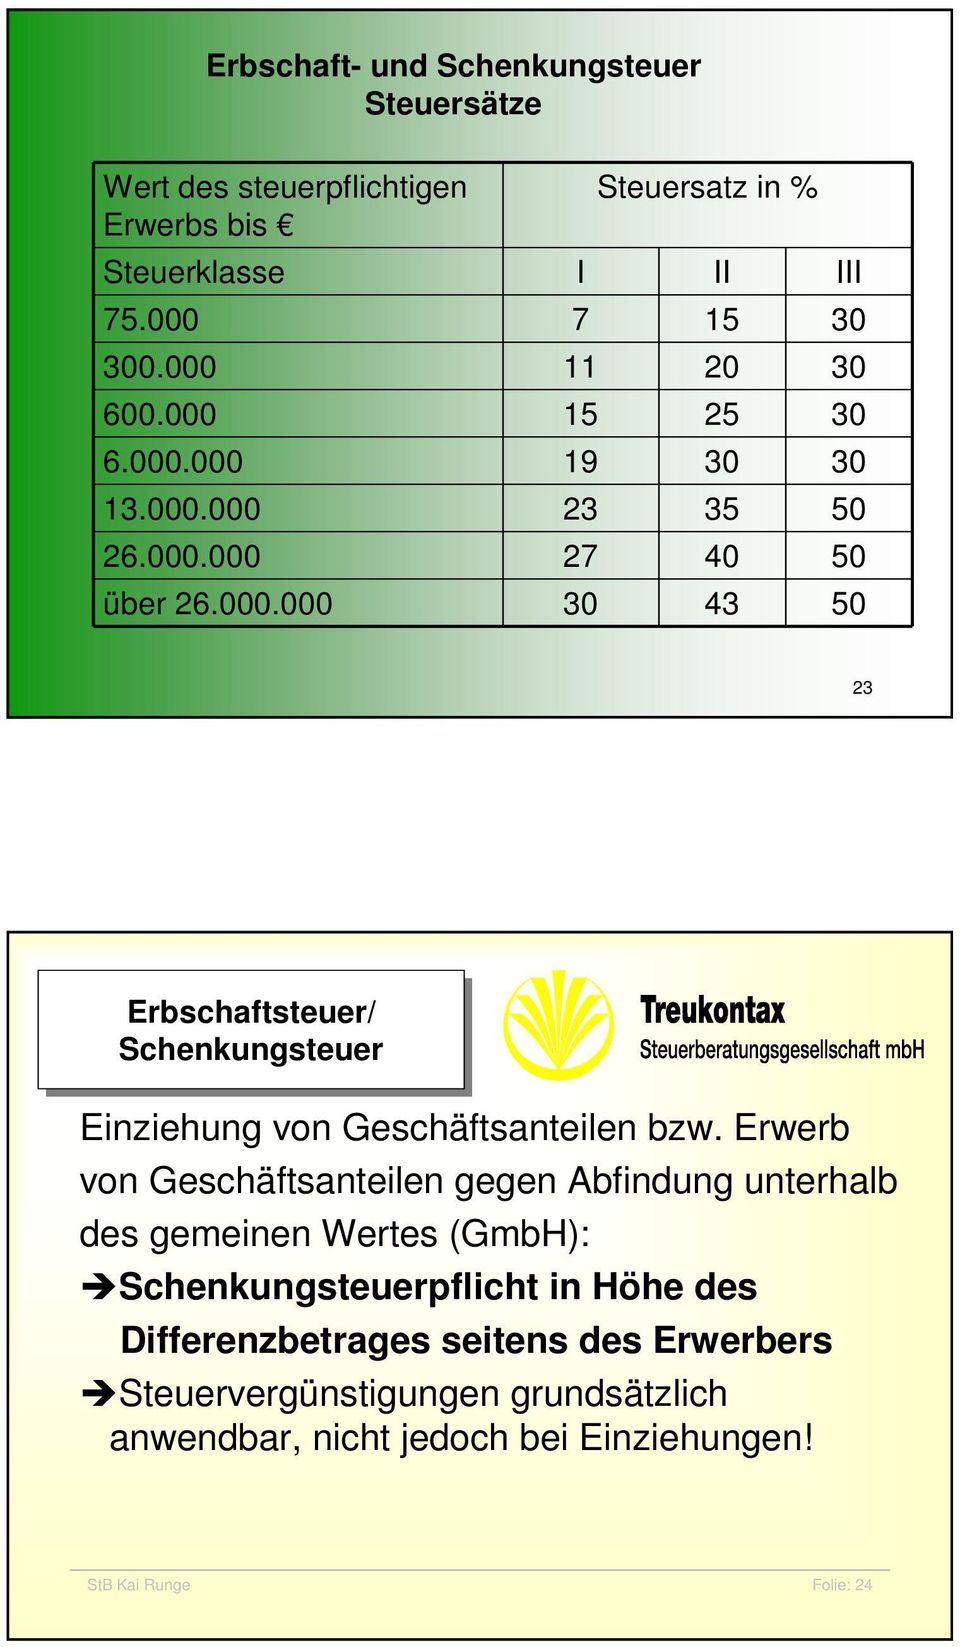 Erwerb von Geschäftsanteilen gegen Abfindung unterhalb des gemeinen Wertes (GmbH): Schenkungsteuerpflicht in Höhe des Differenzbetrages seitens